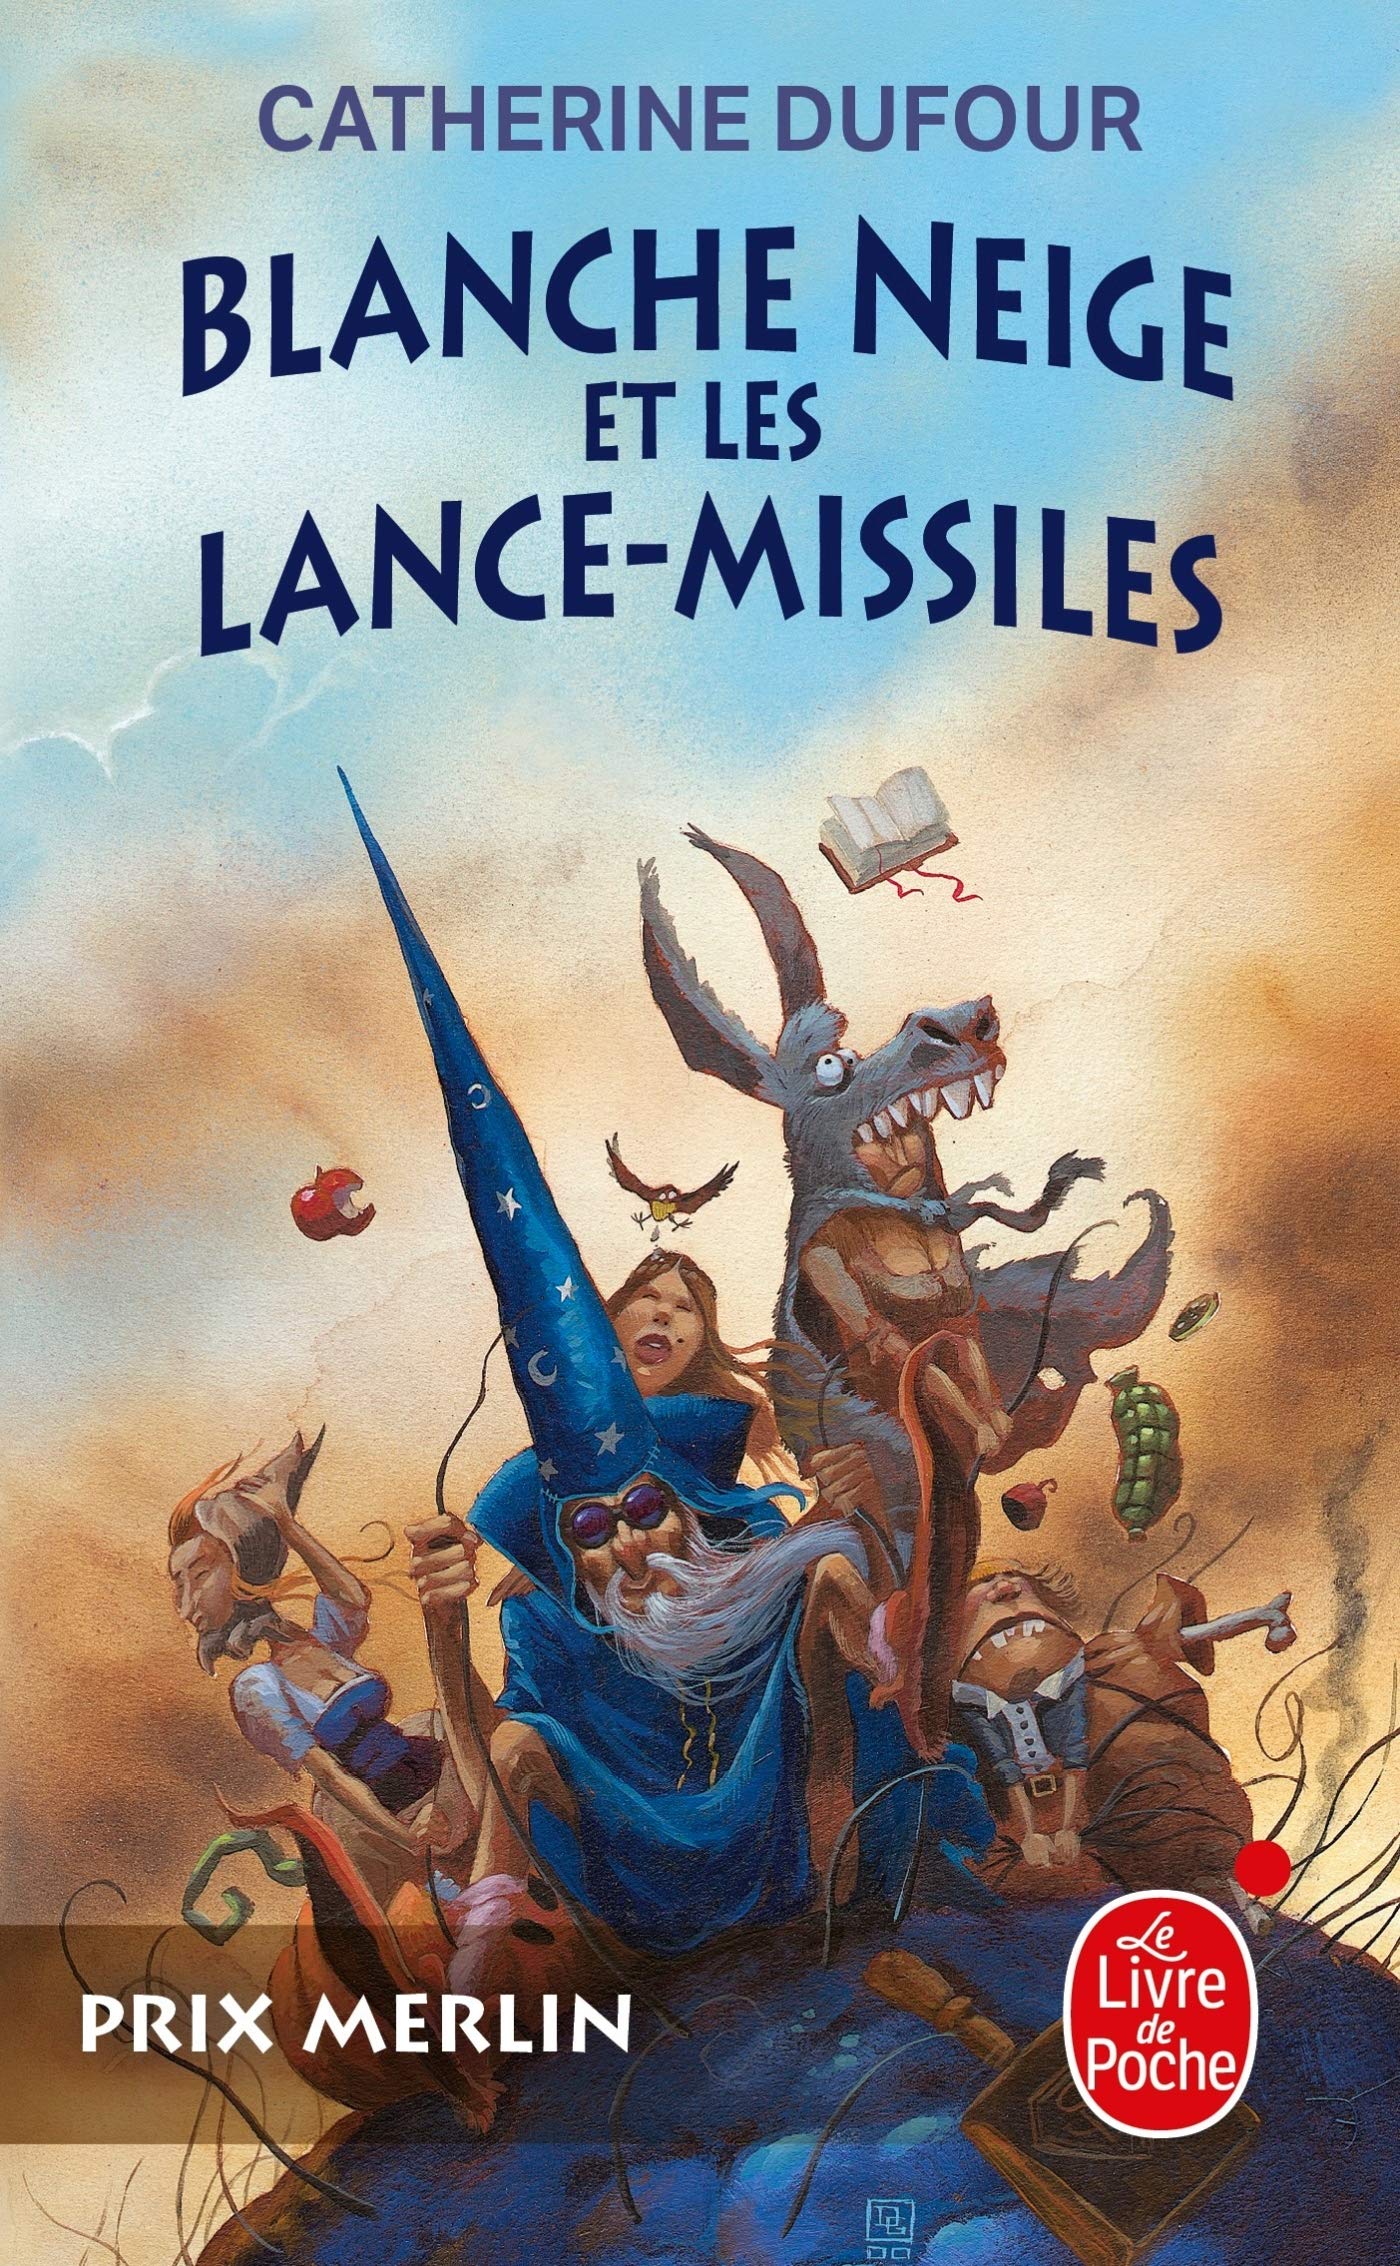 « Blanche-Neige et les lance-missiles », de Catherine Dufour